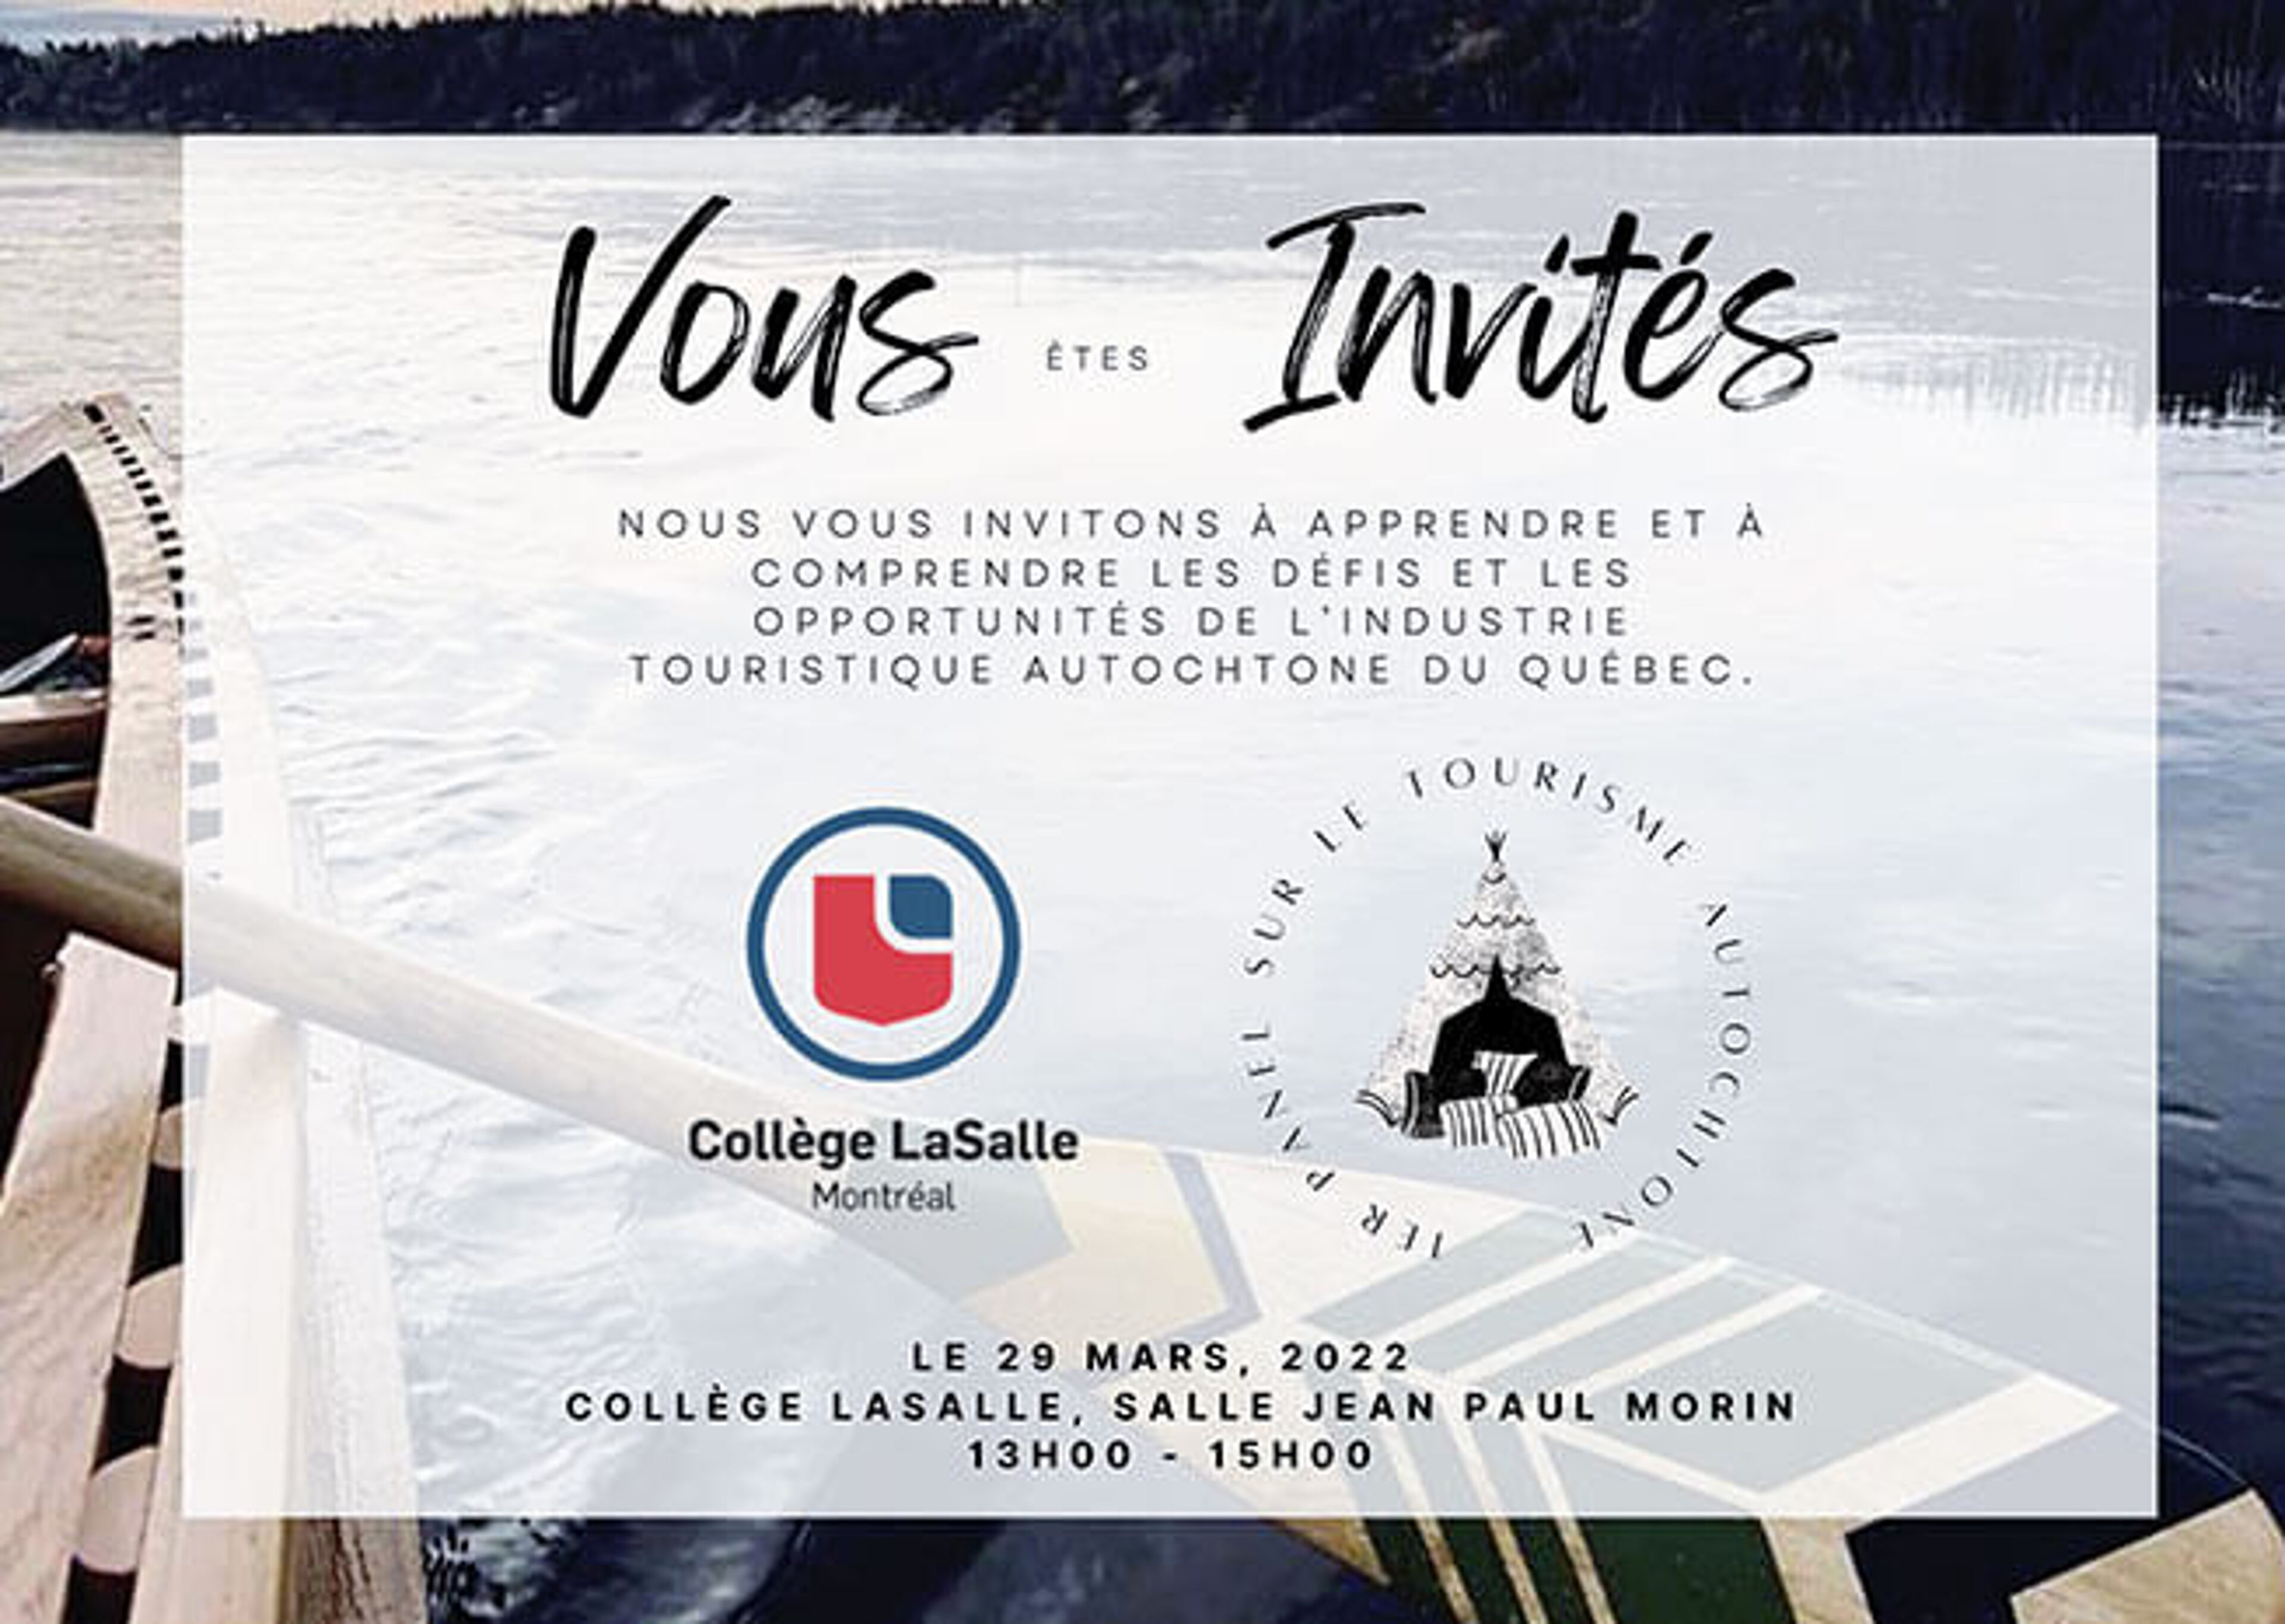 Invitation à un panel éducatif sur le tourisme autochtone au Québec, organisé par le Collège LaSalle le 29 mars 2022.